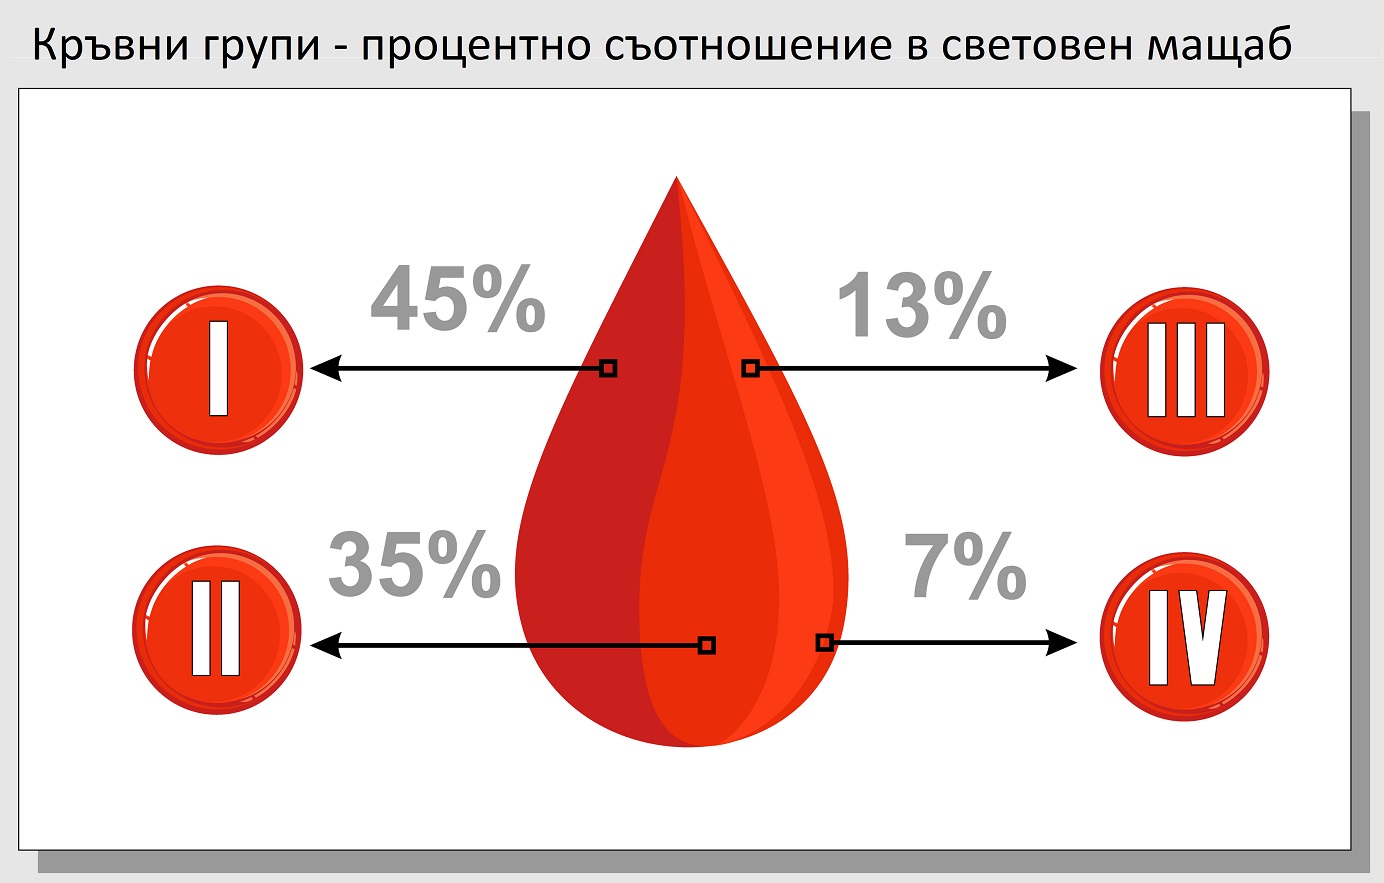 Кръвната група определя характера ви. Разберете бъдещето си